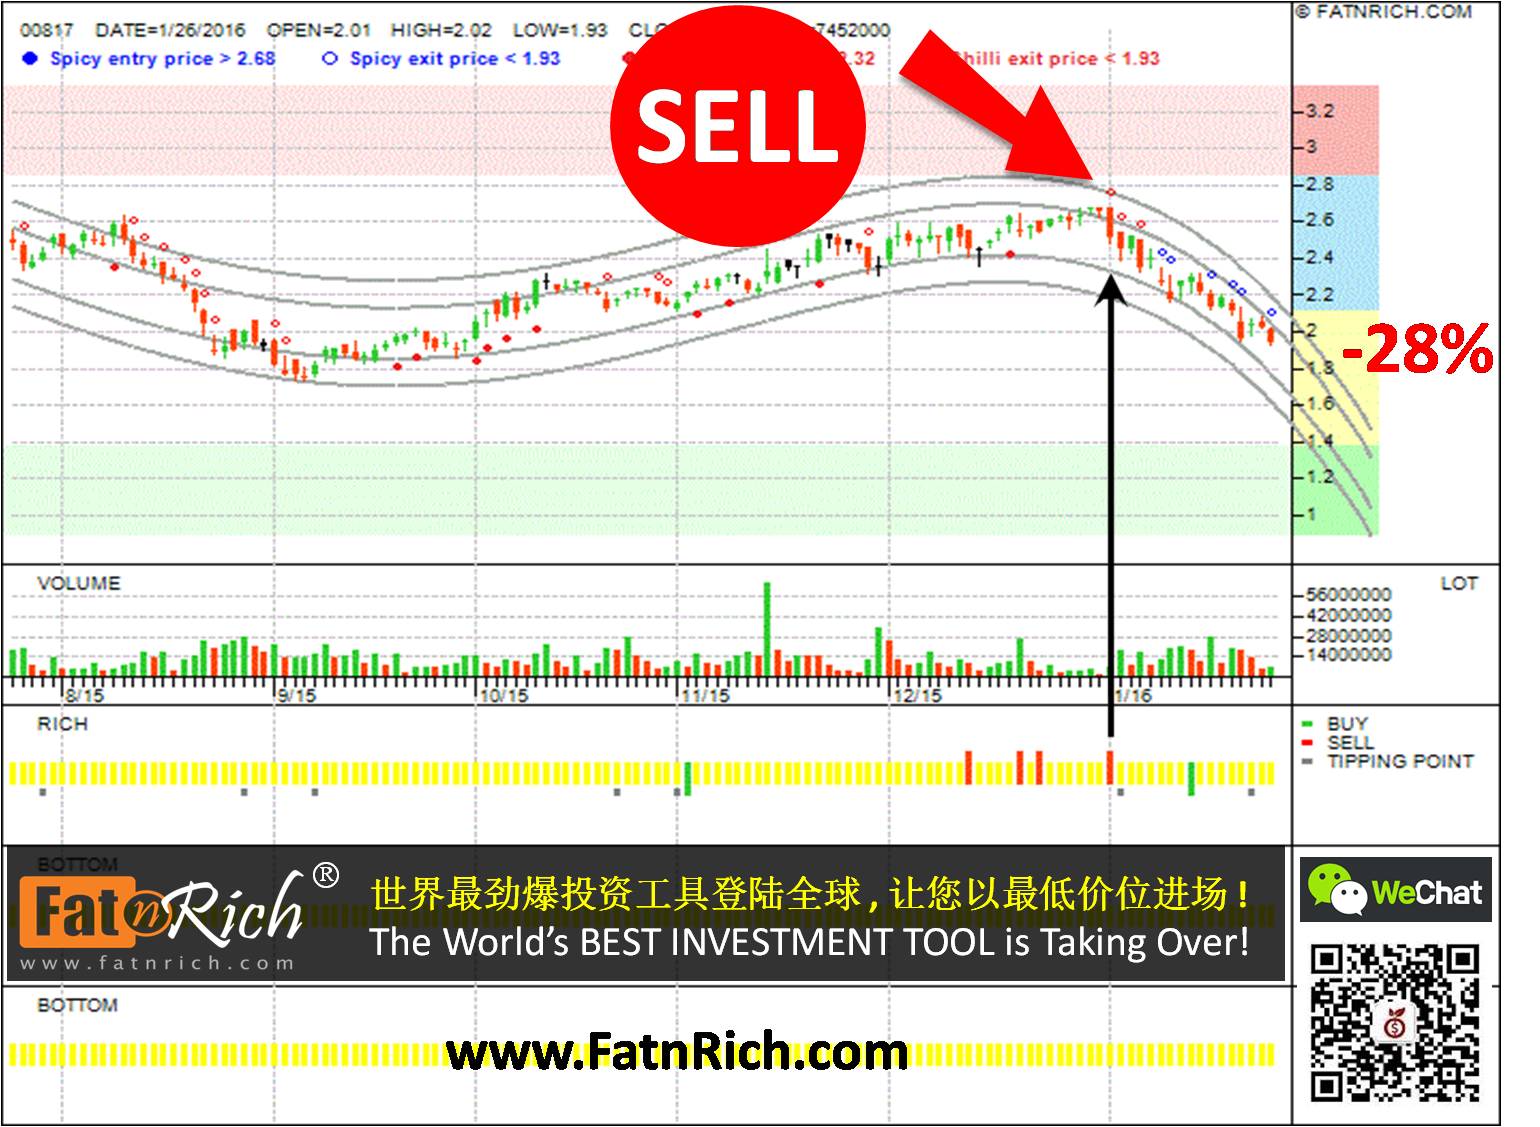 Hong Kong stock China Jinmao Holdings Group Ltd 00817